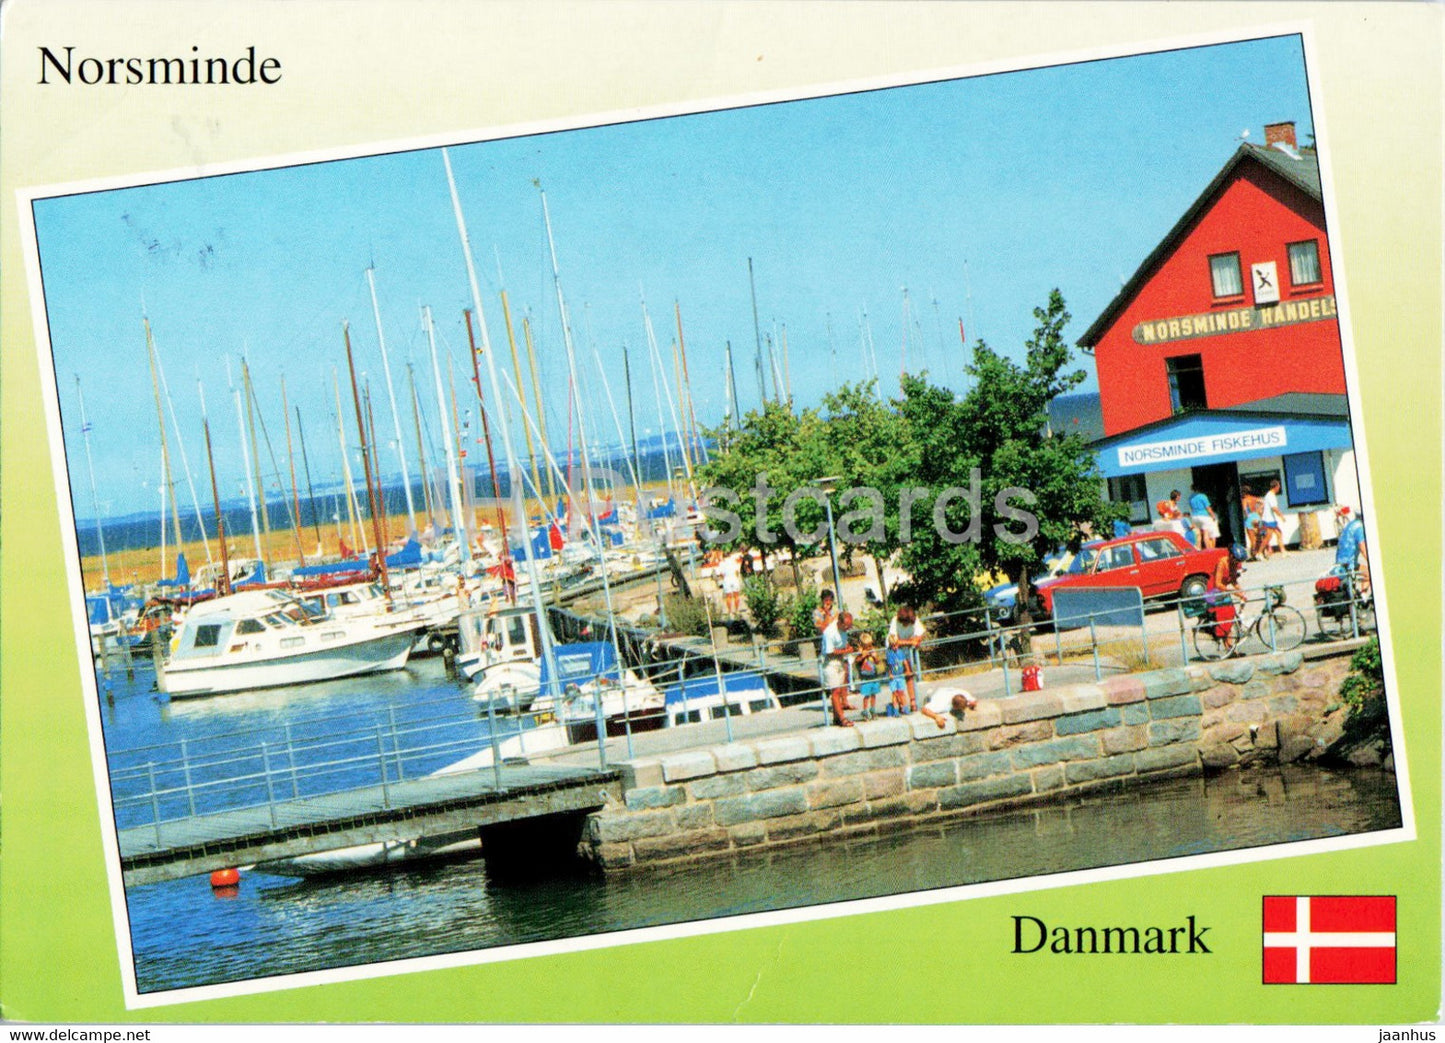 Norsminde - Port - boat - 1996 - Denmark - used - JH Postcards